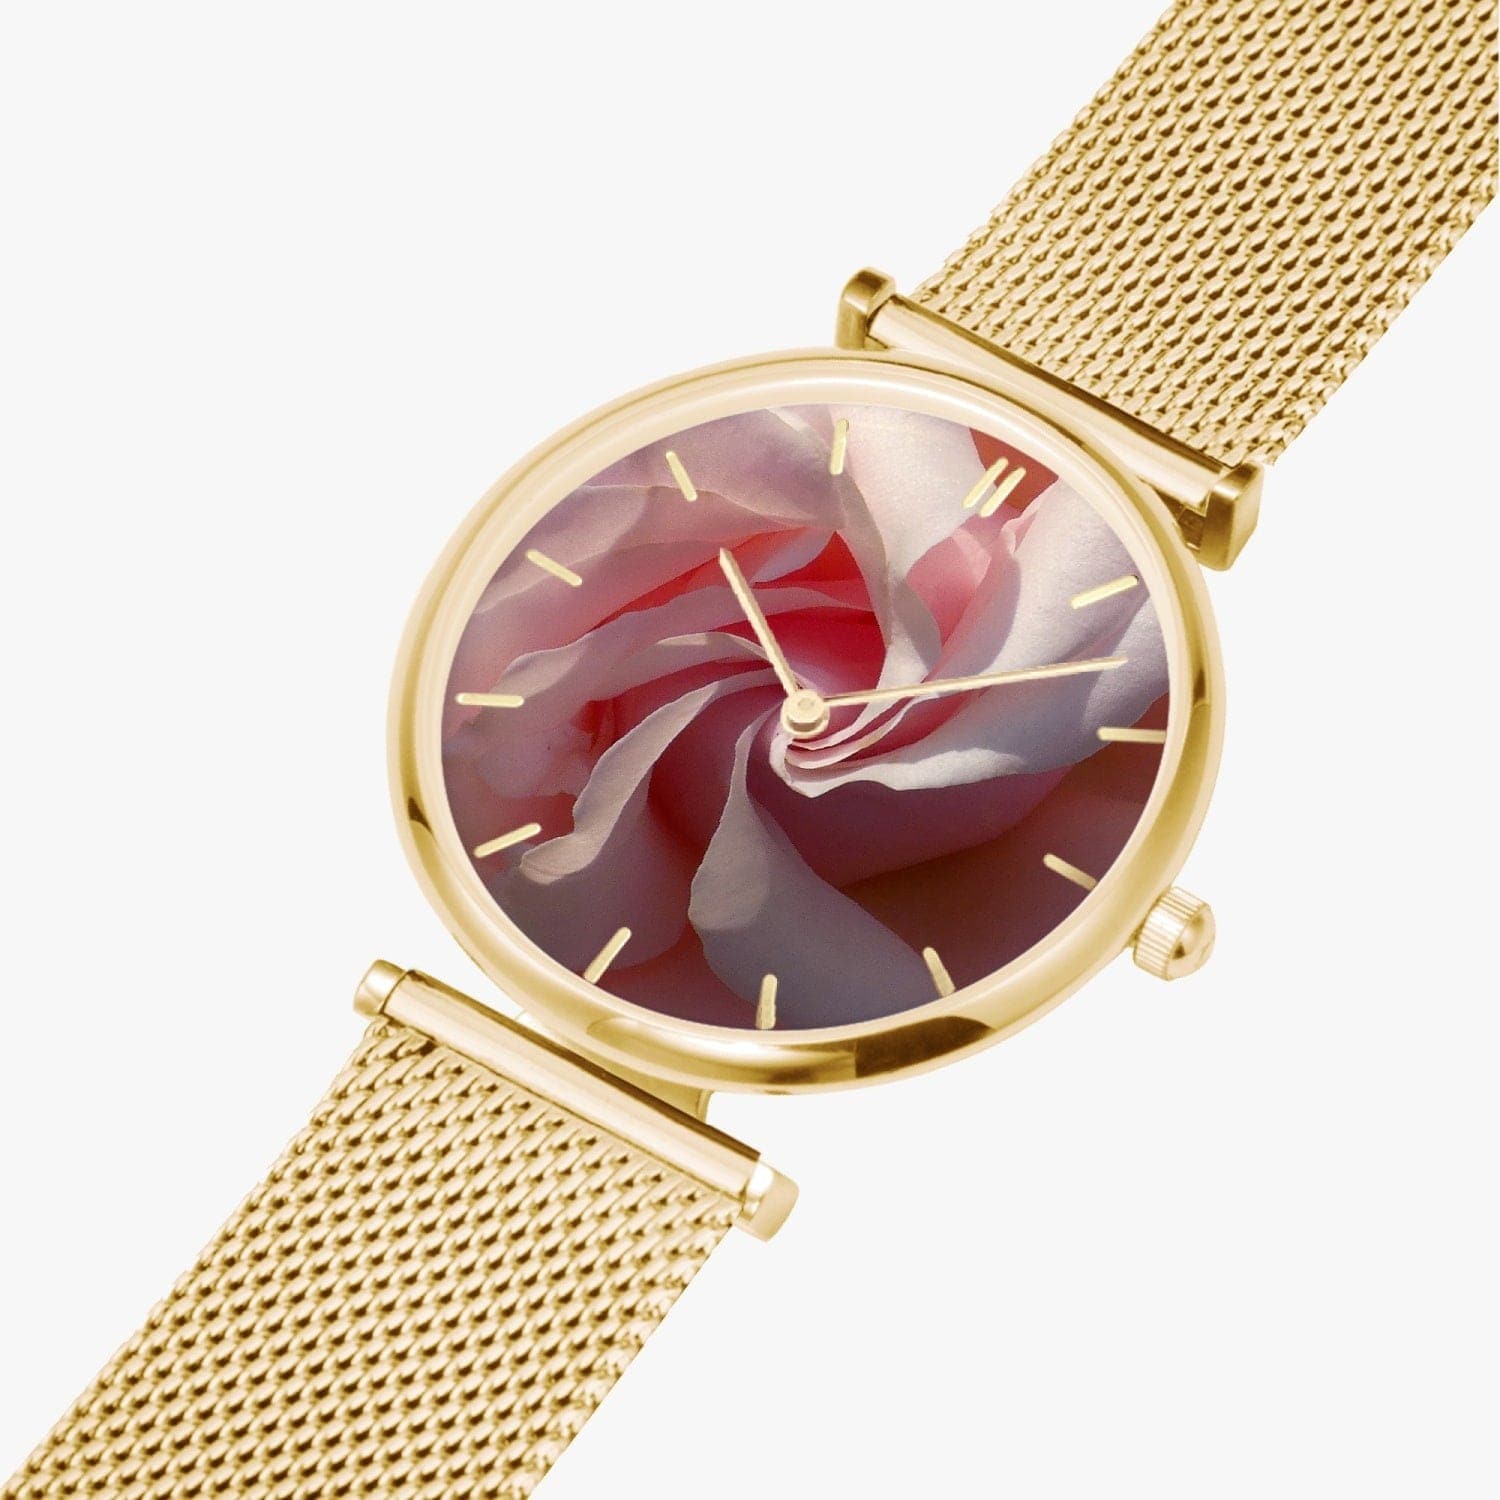 Spiral rose. New Stylish Ultra-Thin Quartz Watch. Designer watch by Ingrid Hütten